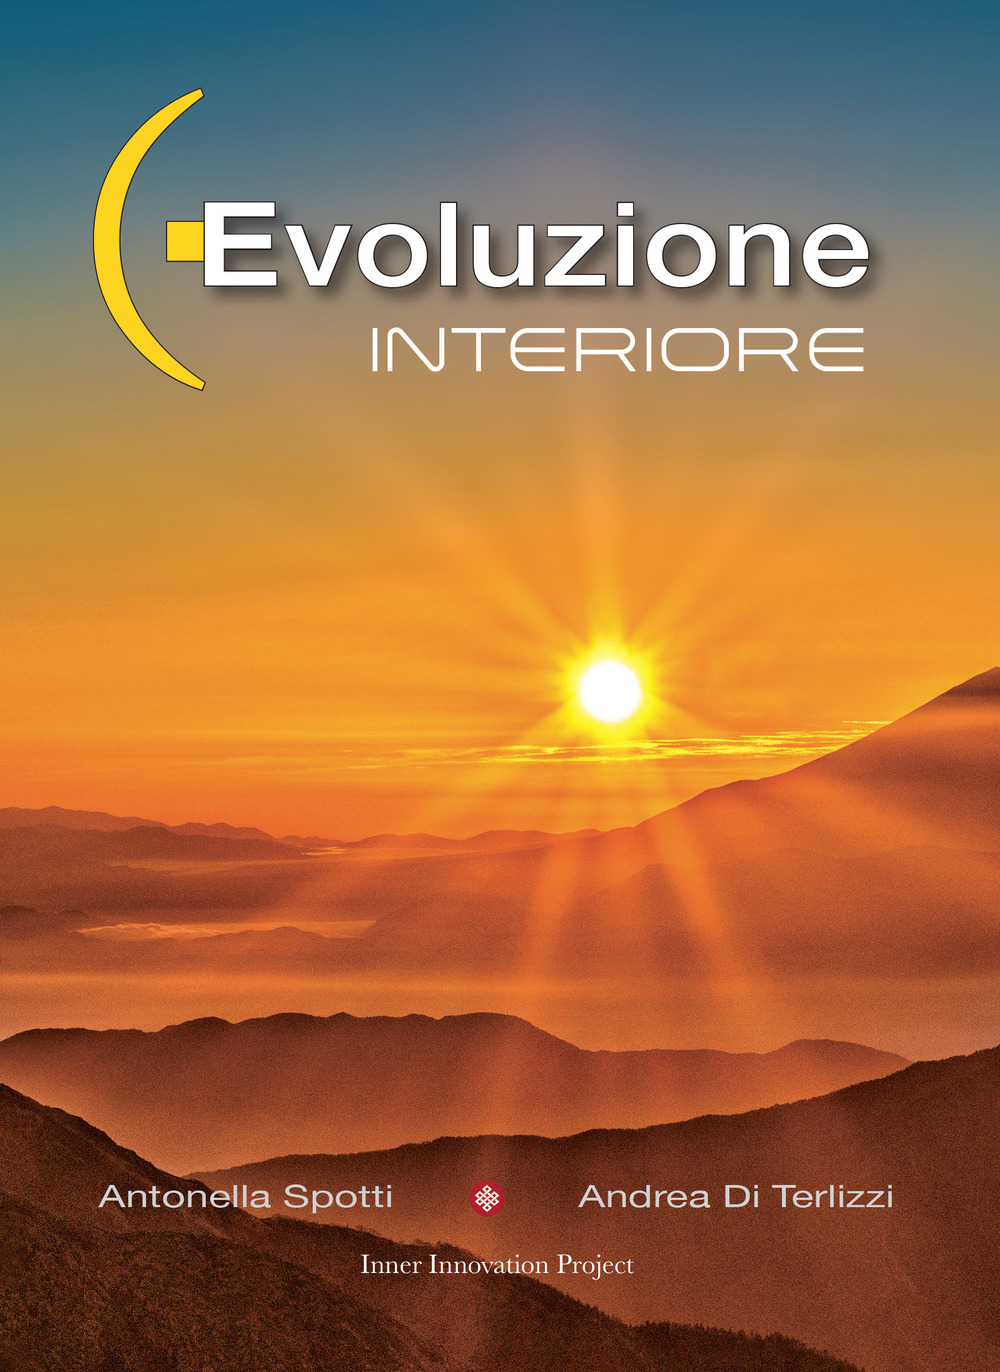 Libri Andrea Di Terlizzi / Antonella Spotti - Evoluzione Interiore NUOVO SIGILLATO SUBITO DISPONIBILE